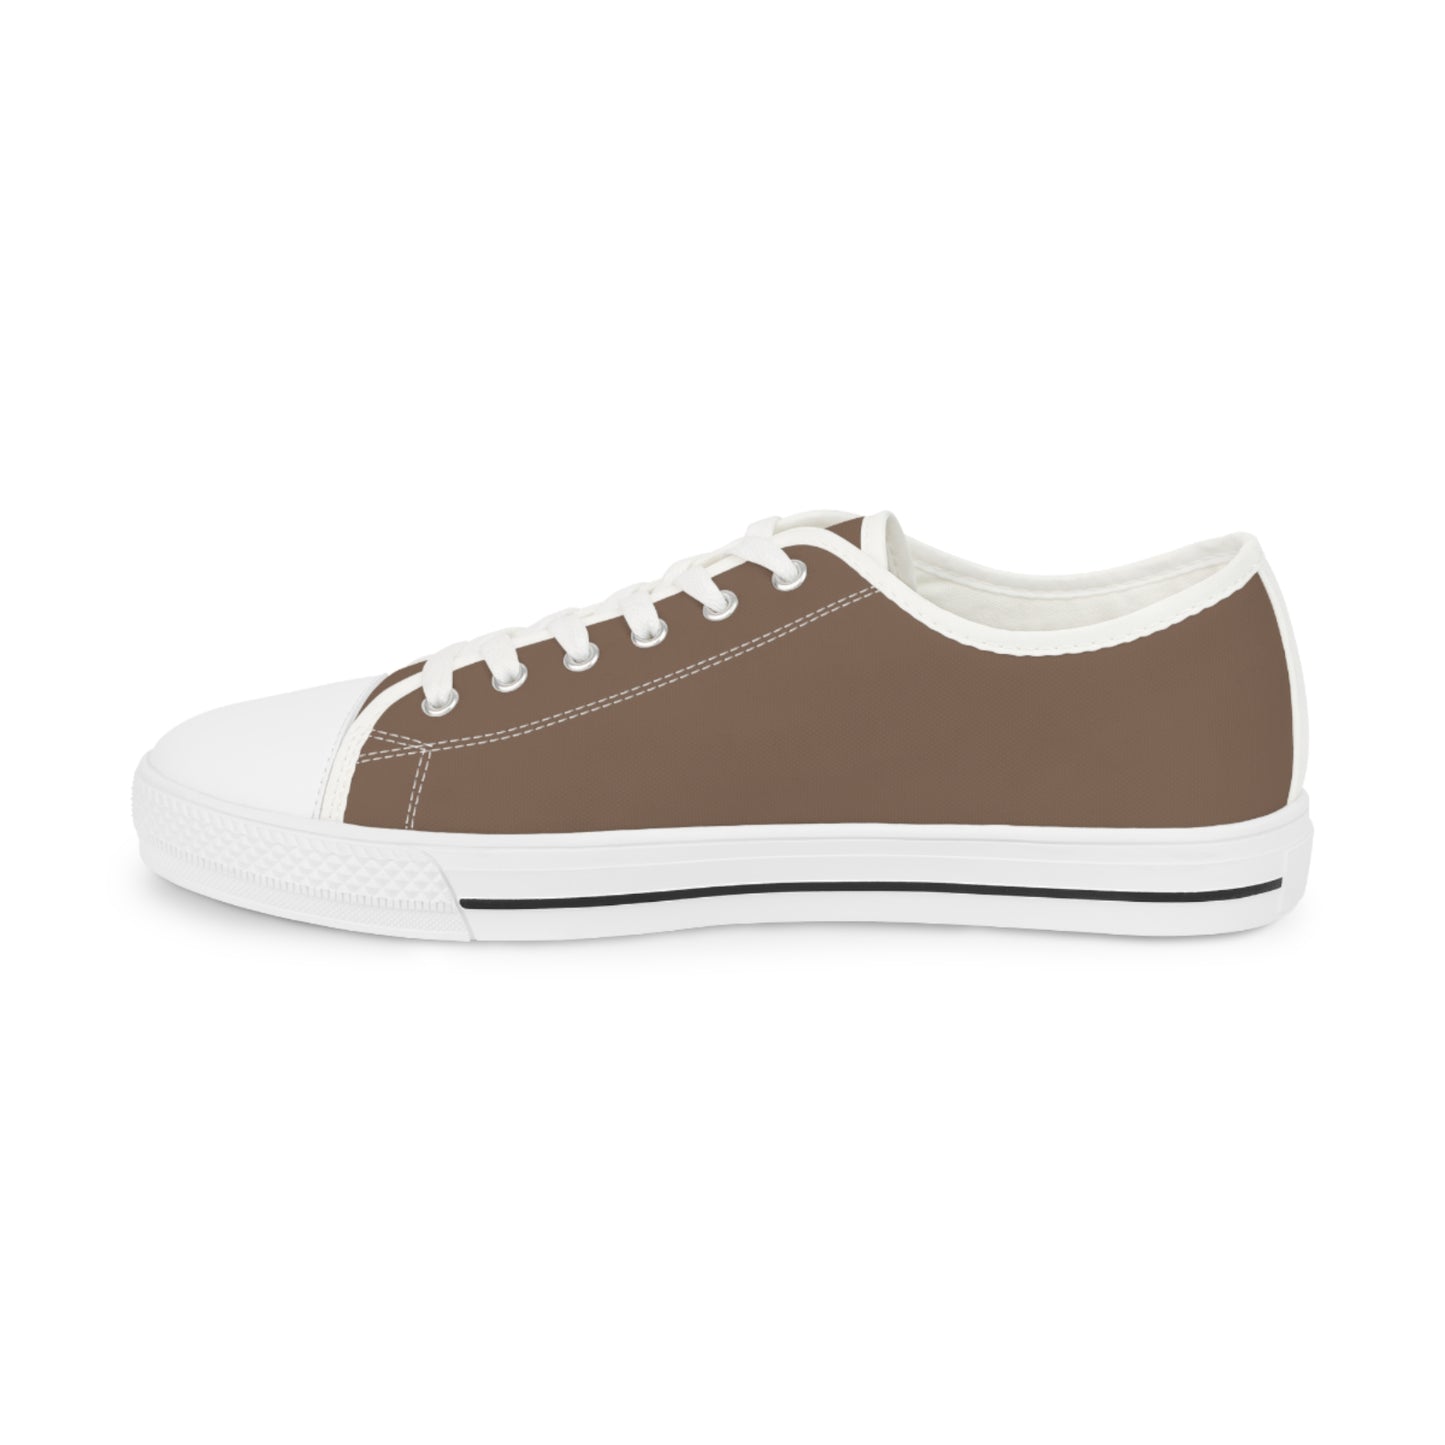 Men's Canvas Low Top Solid Color Sneakers - Latte Tan US 14 Black sole